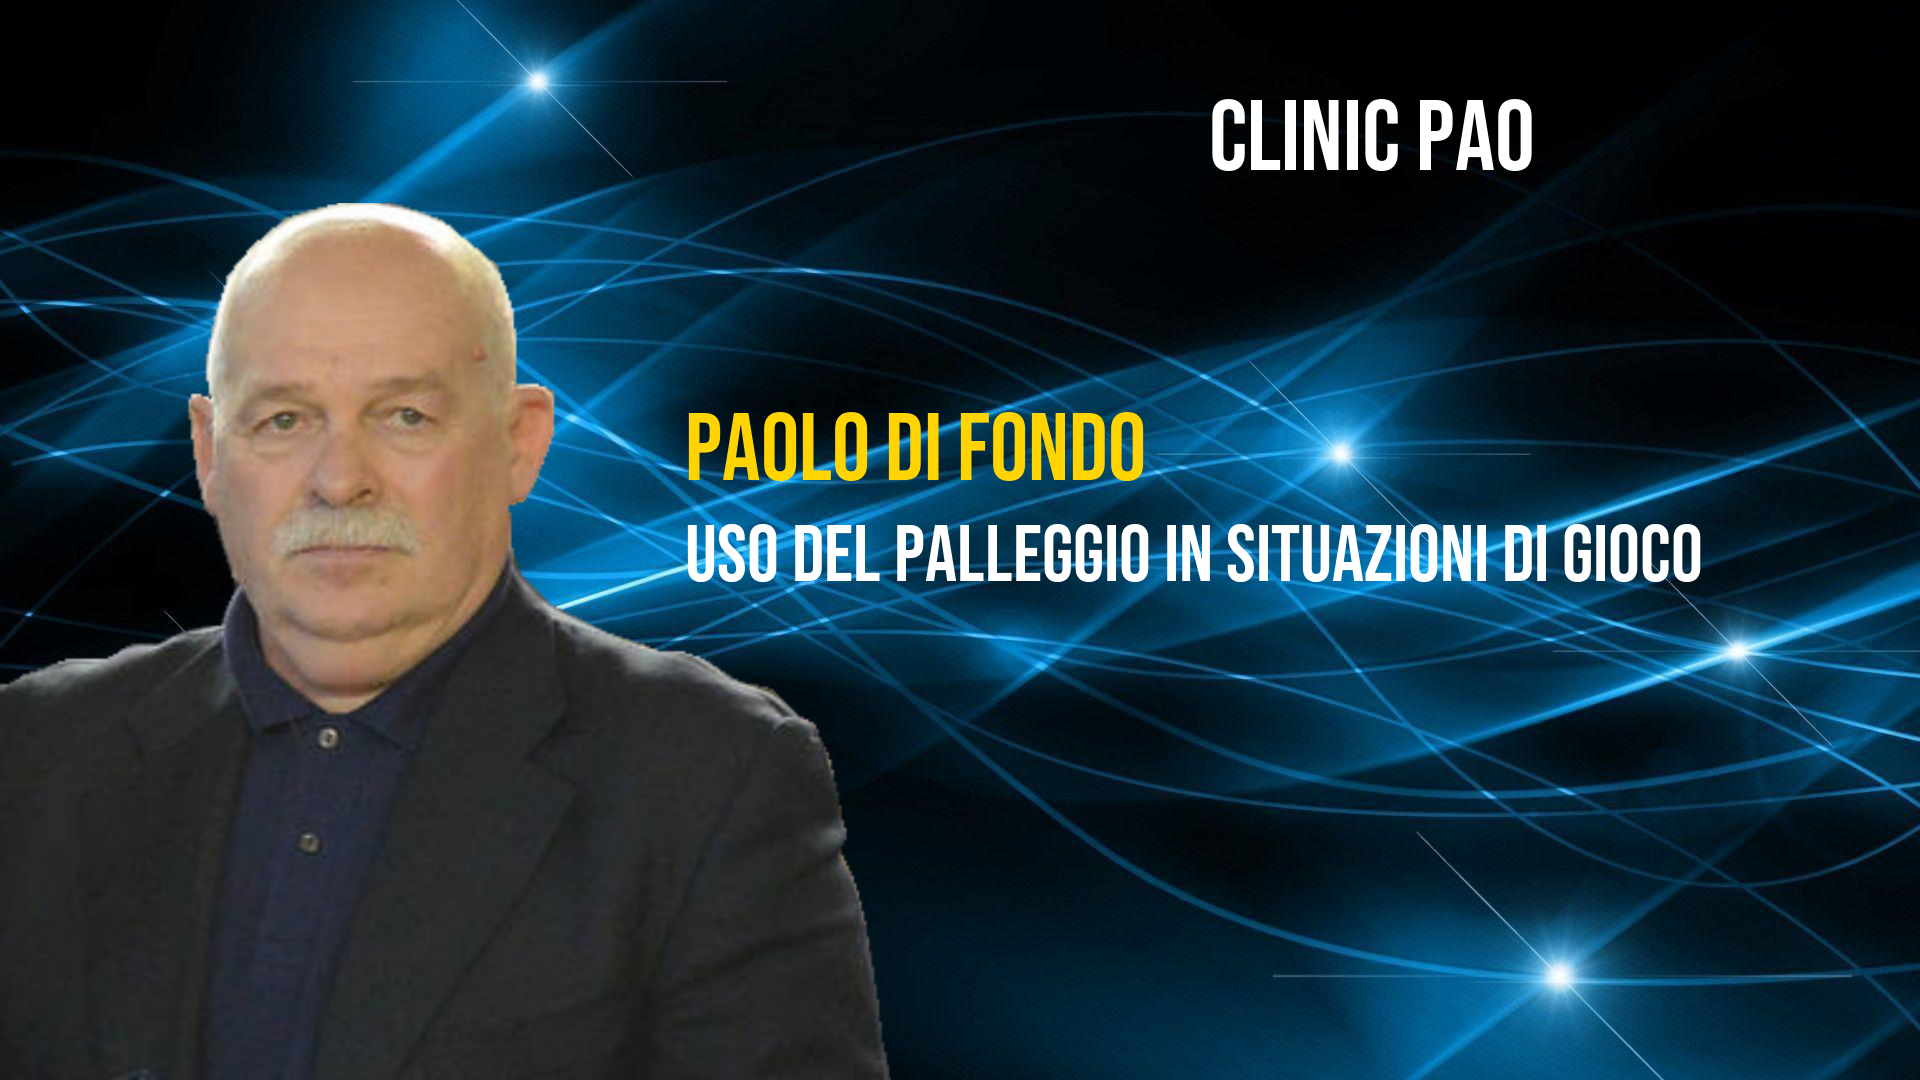 <p>Paolo Di Fonzo - Uso del palleggio in situazioni di gioco</p>
